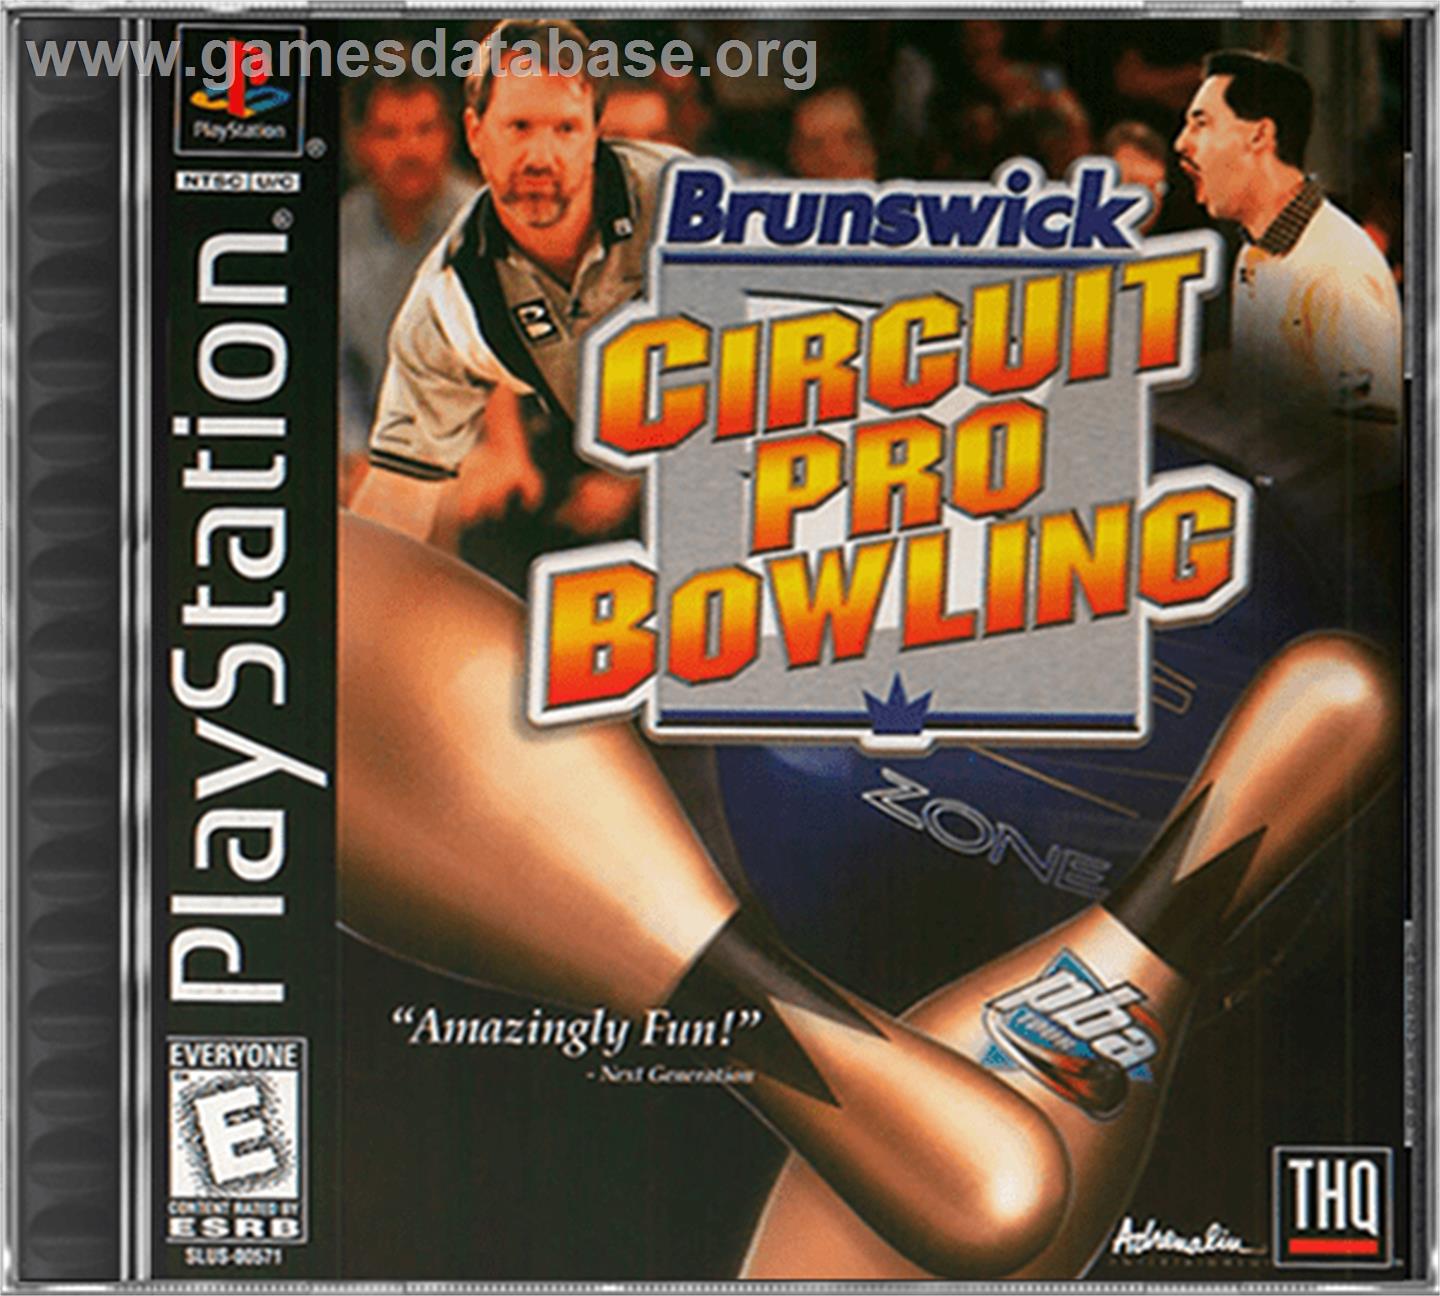 Brunswick Circuit Pro Bowling - Sony Playstation - Artwork - Box